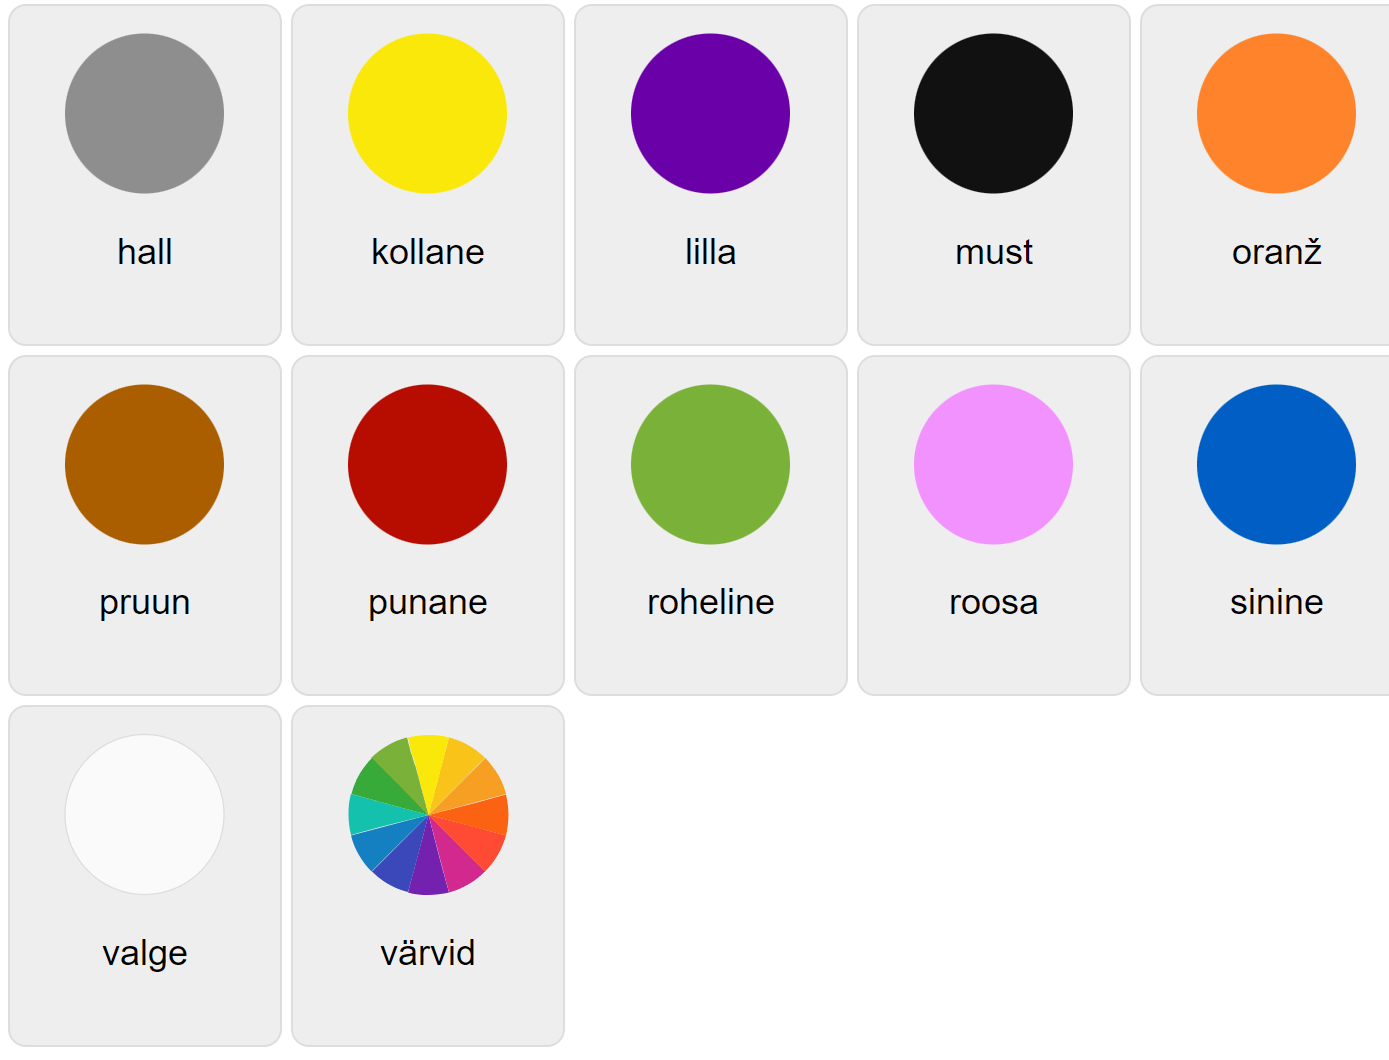 Färger på estniska